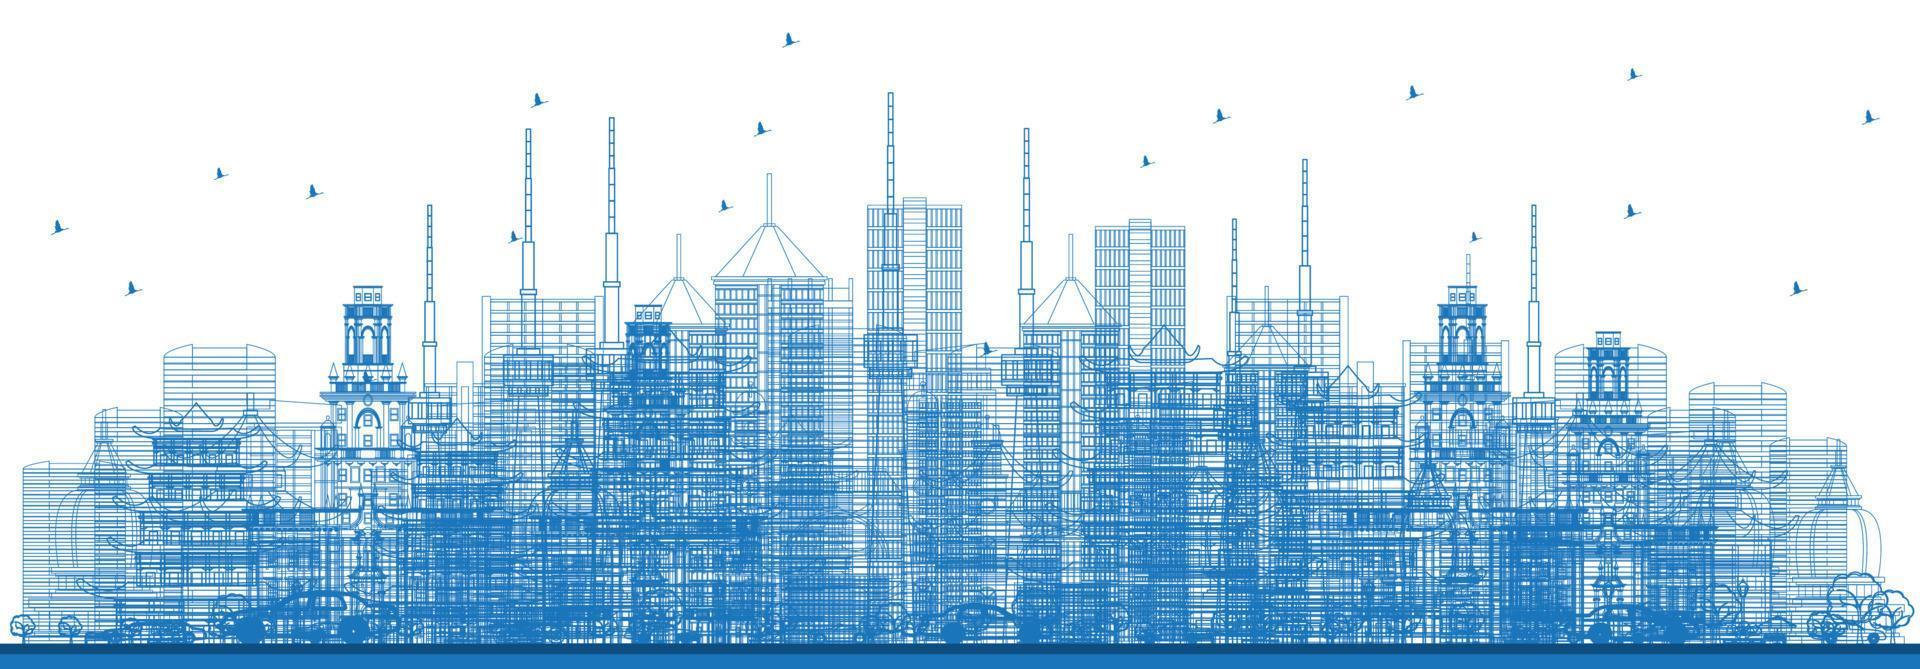 delinear los rascacielos y edificios de la ciudad en color azul. vector